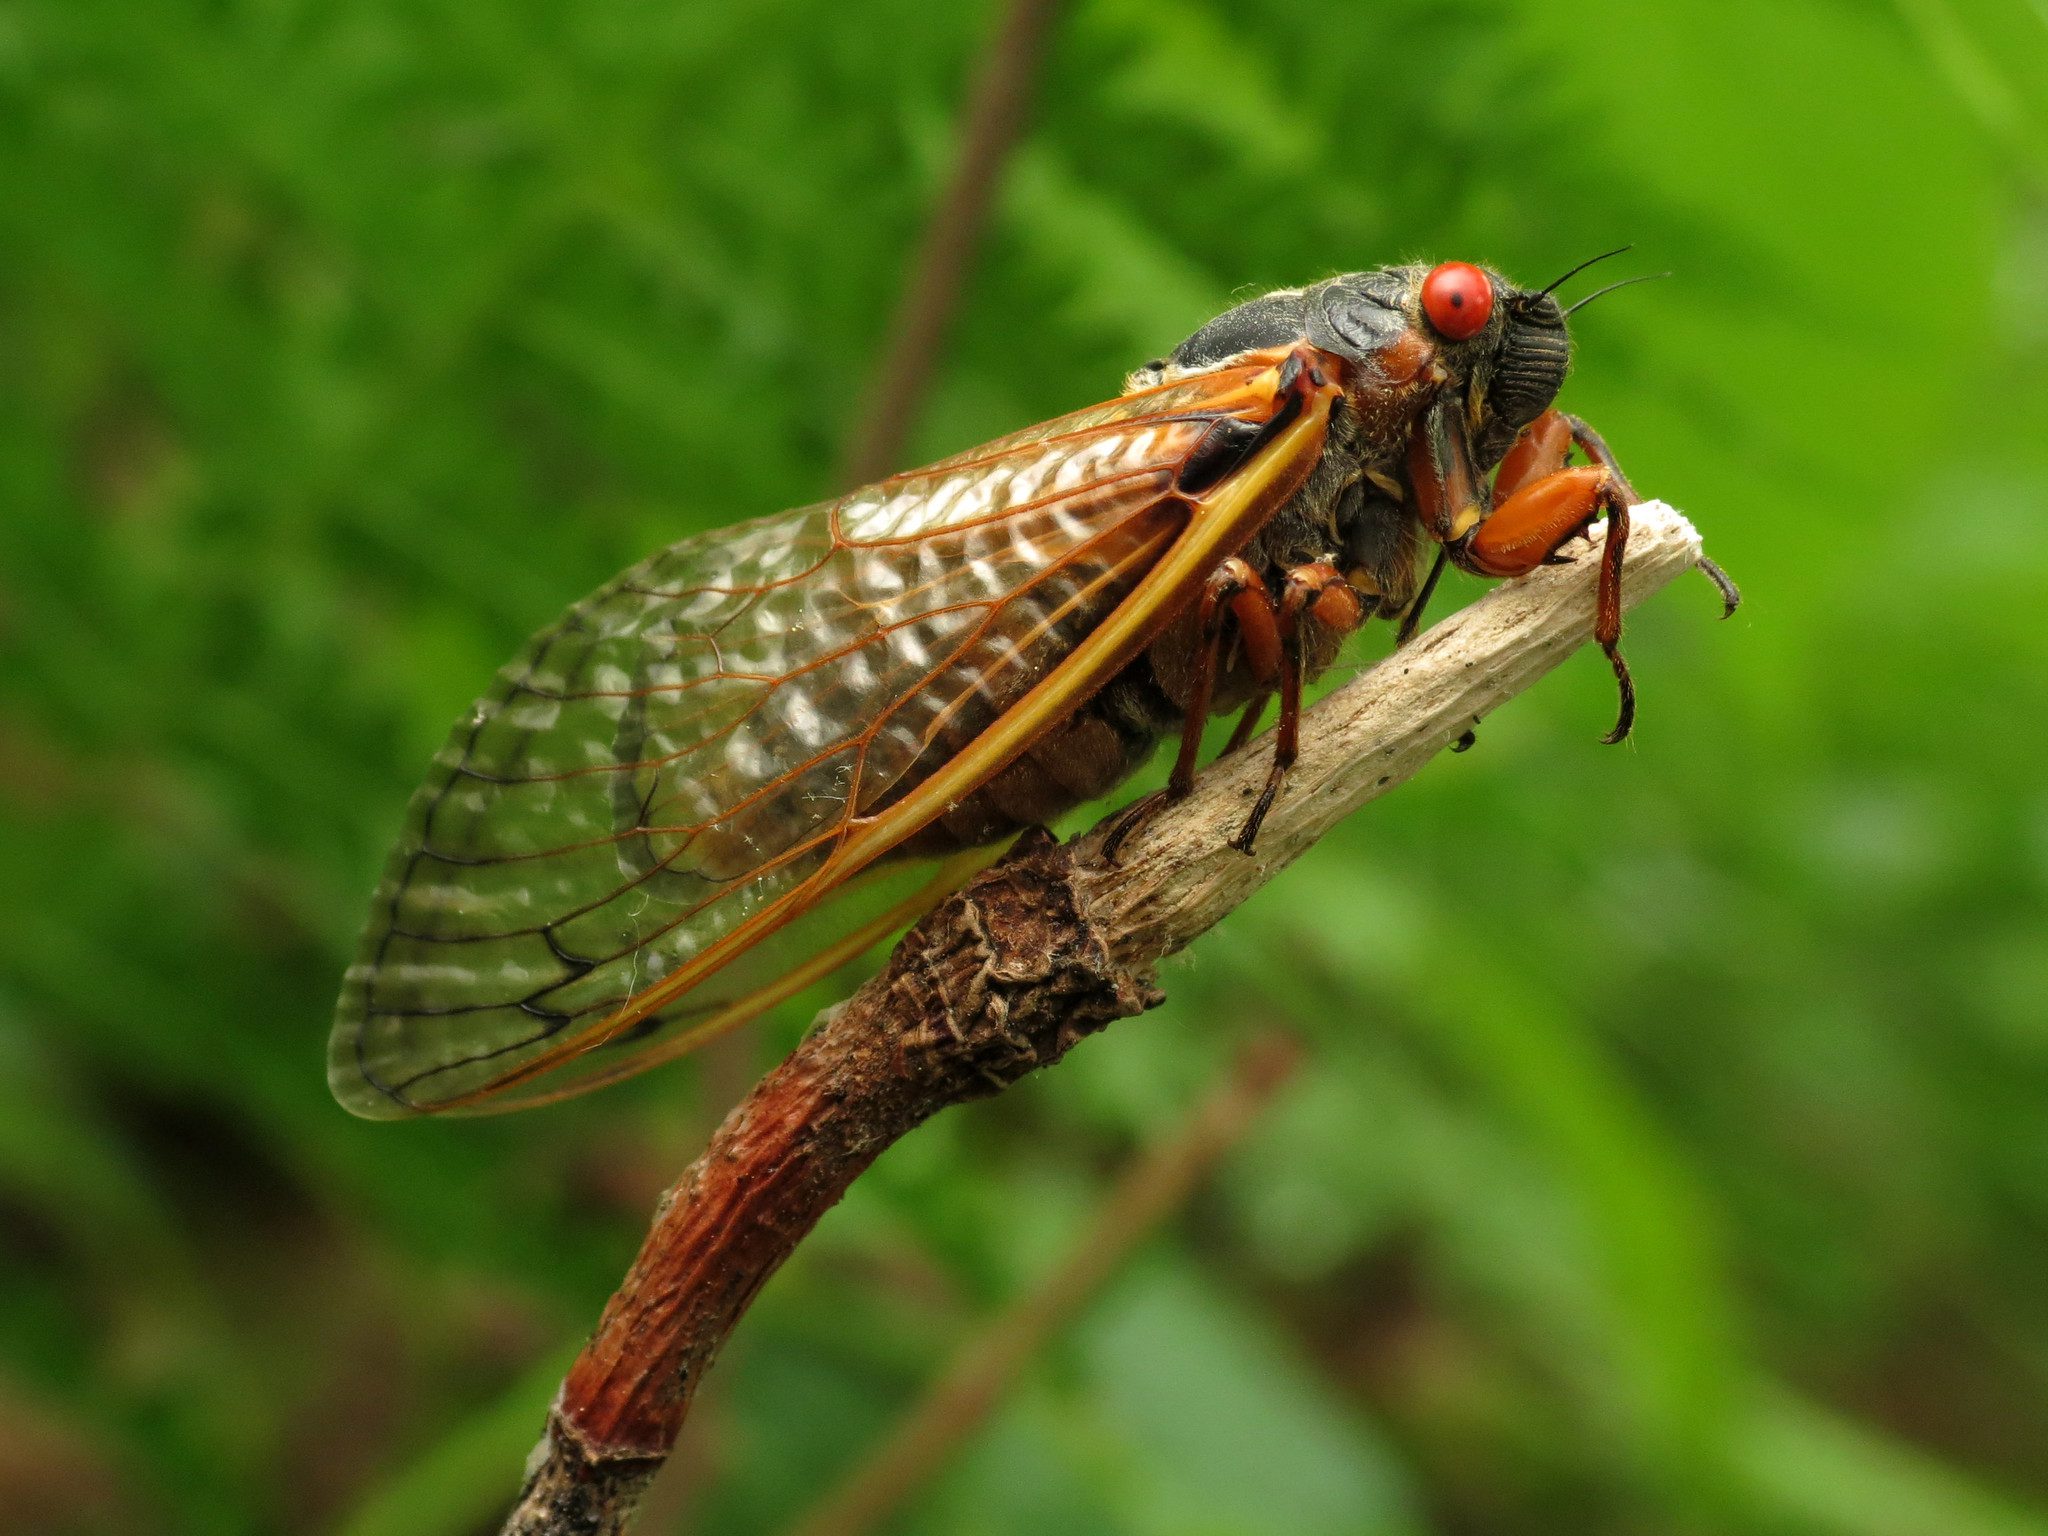 A Brood X cicada. 